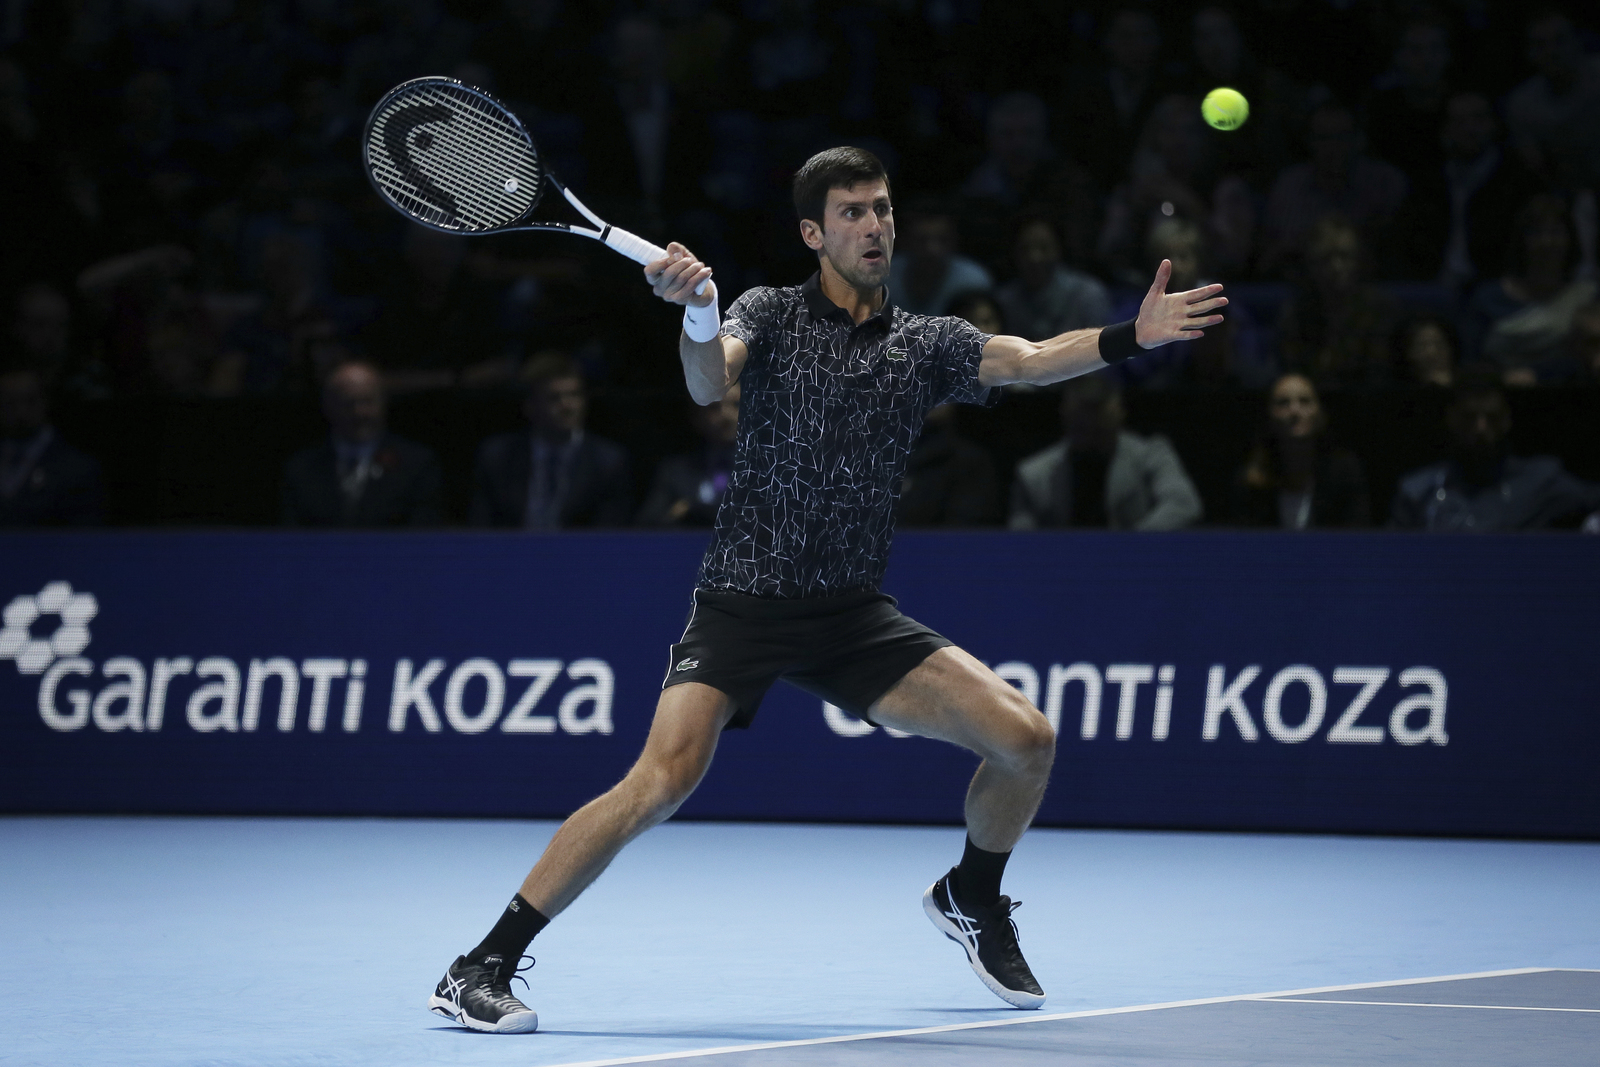 El serbio Novak Djokovic se impuso 6-4, 6-3 a John Isner en su primer juego en las Finales de la ATP.